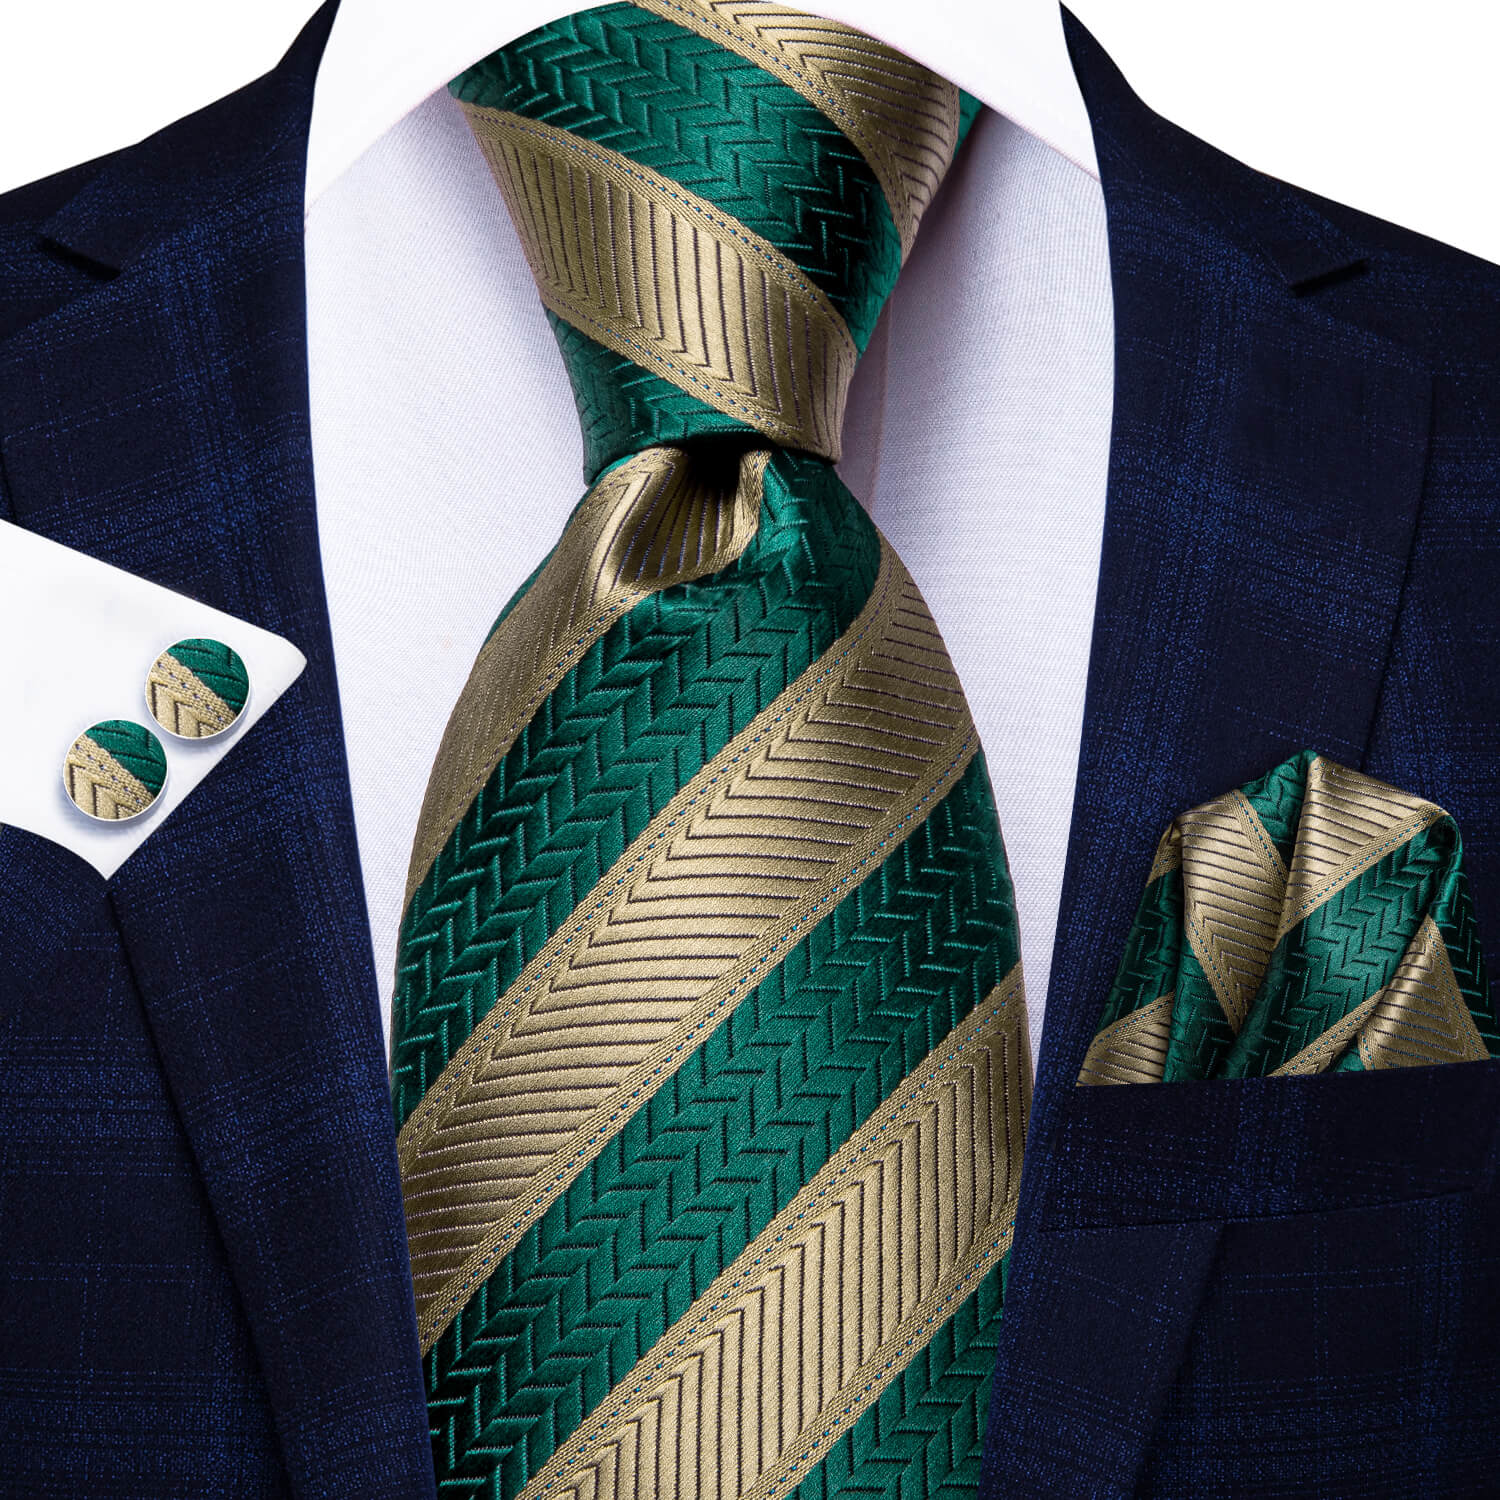 Stripe Tie Teal Green Brown Tie